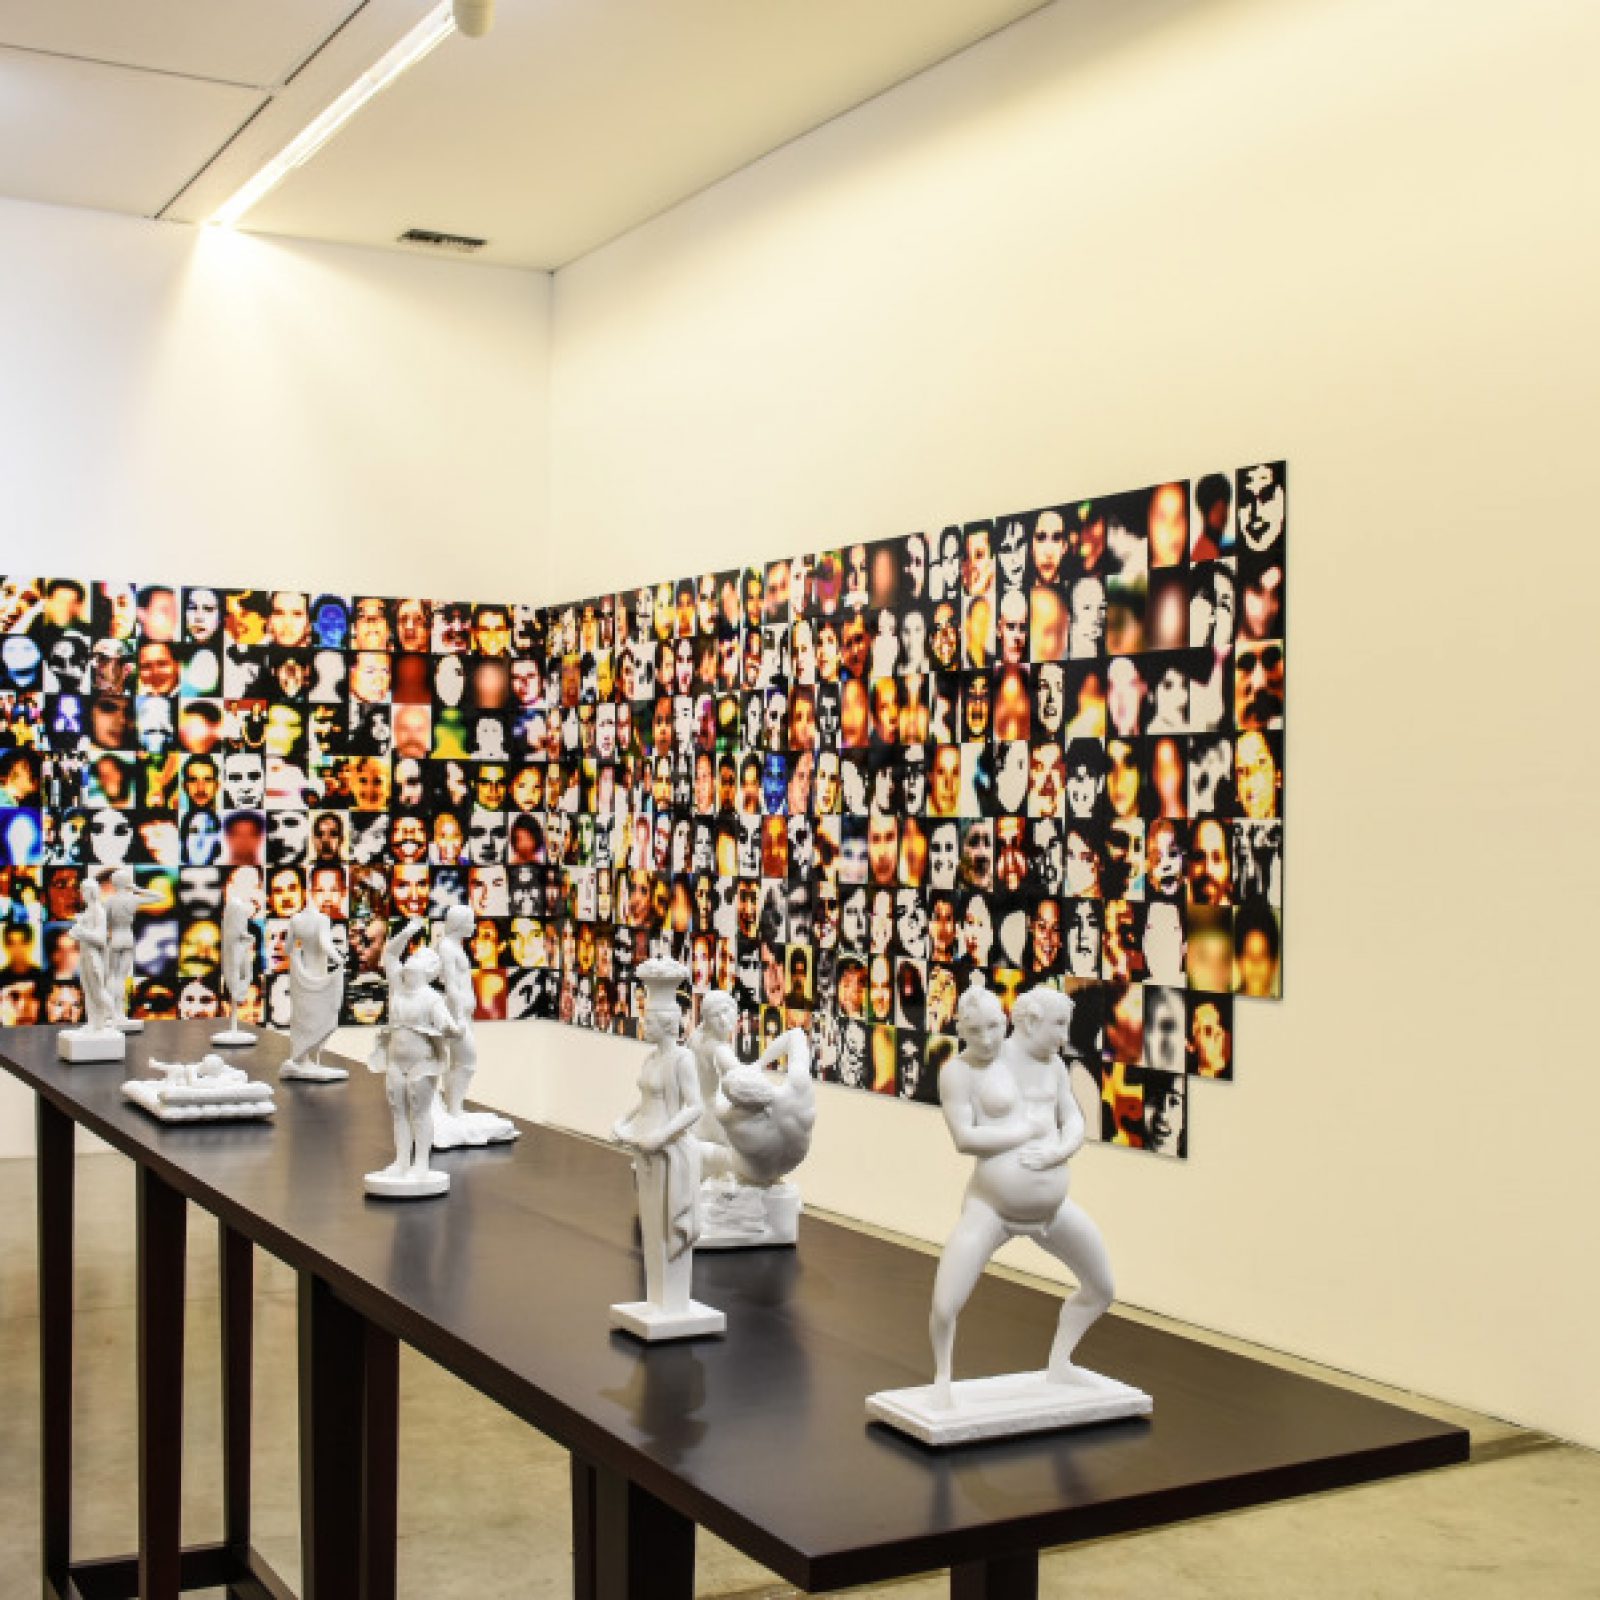 Vista de la muestra Formas de libertad de Carlos Motta en el Museo de Arte Moderno de Medellín, Colombia. Foto: cortesía MAMM.